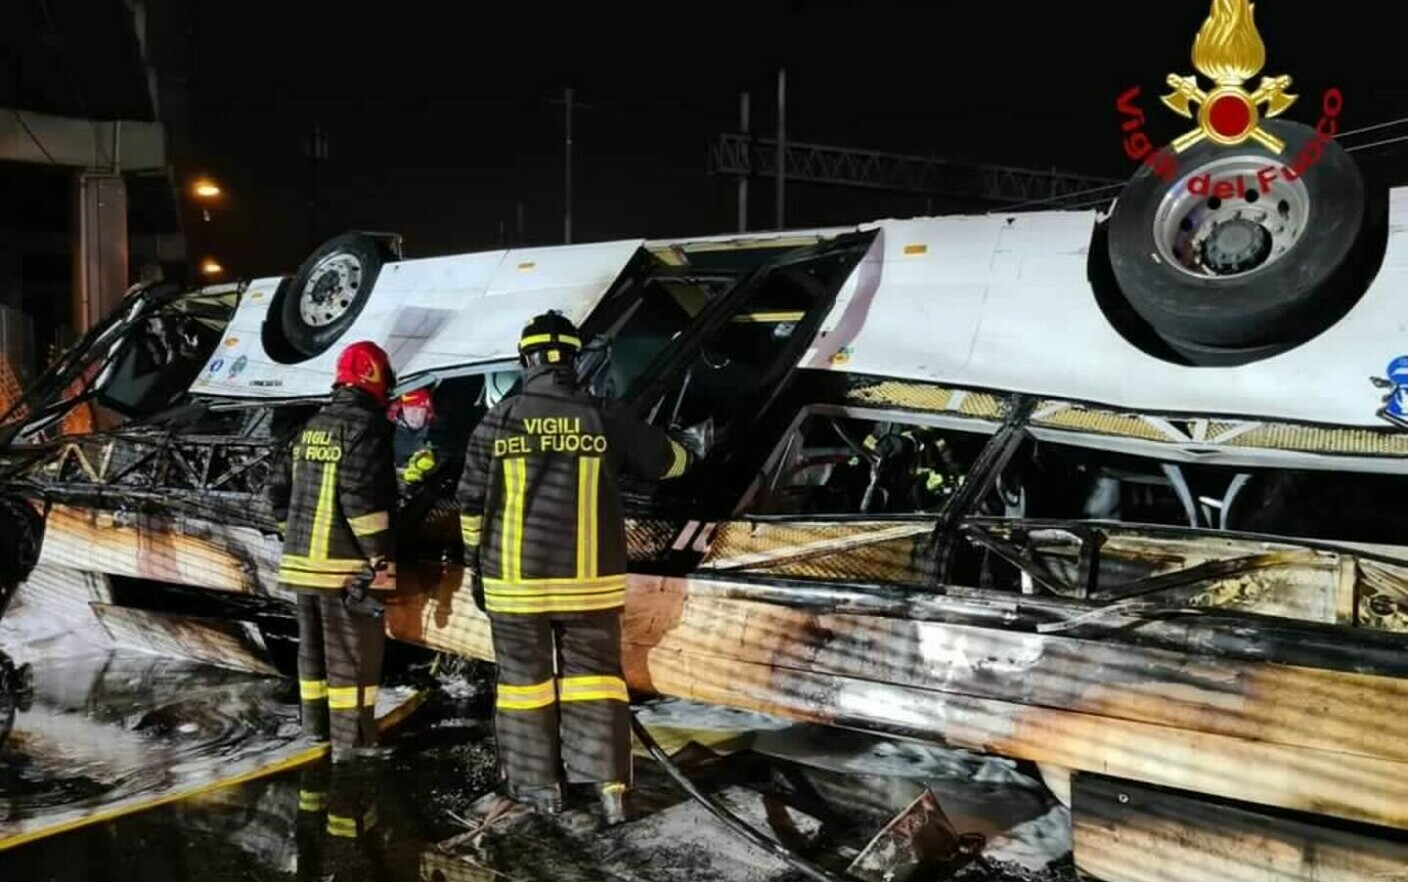 Incidente devastante in Italia |  I risultati dell’autopsia del conducente saranno disponibili tra dieci giorni.  L’annuncio del pubblico ministero